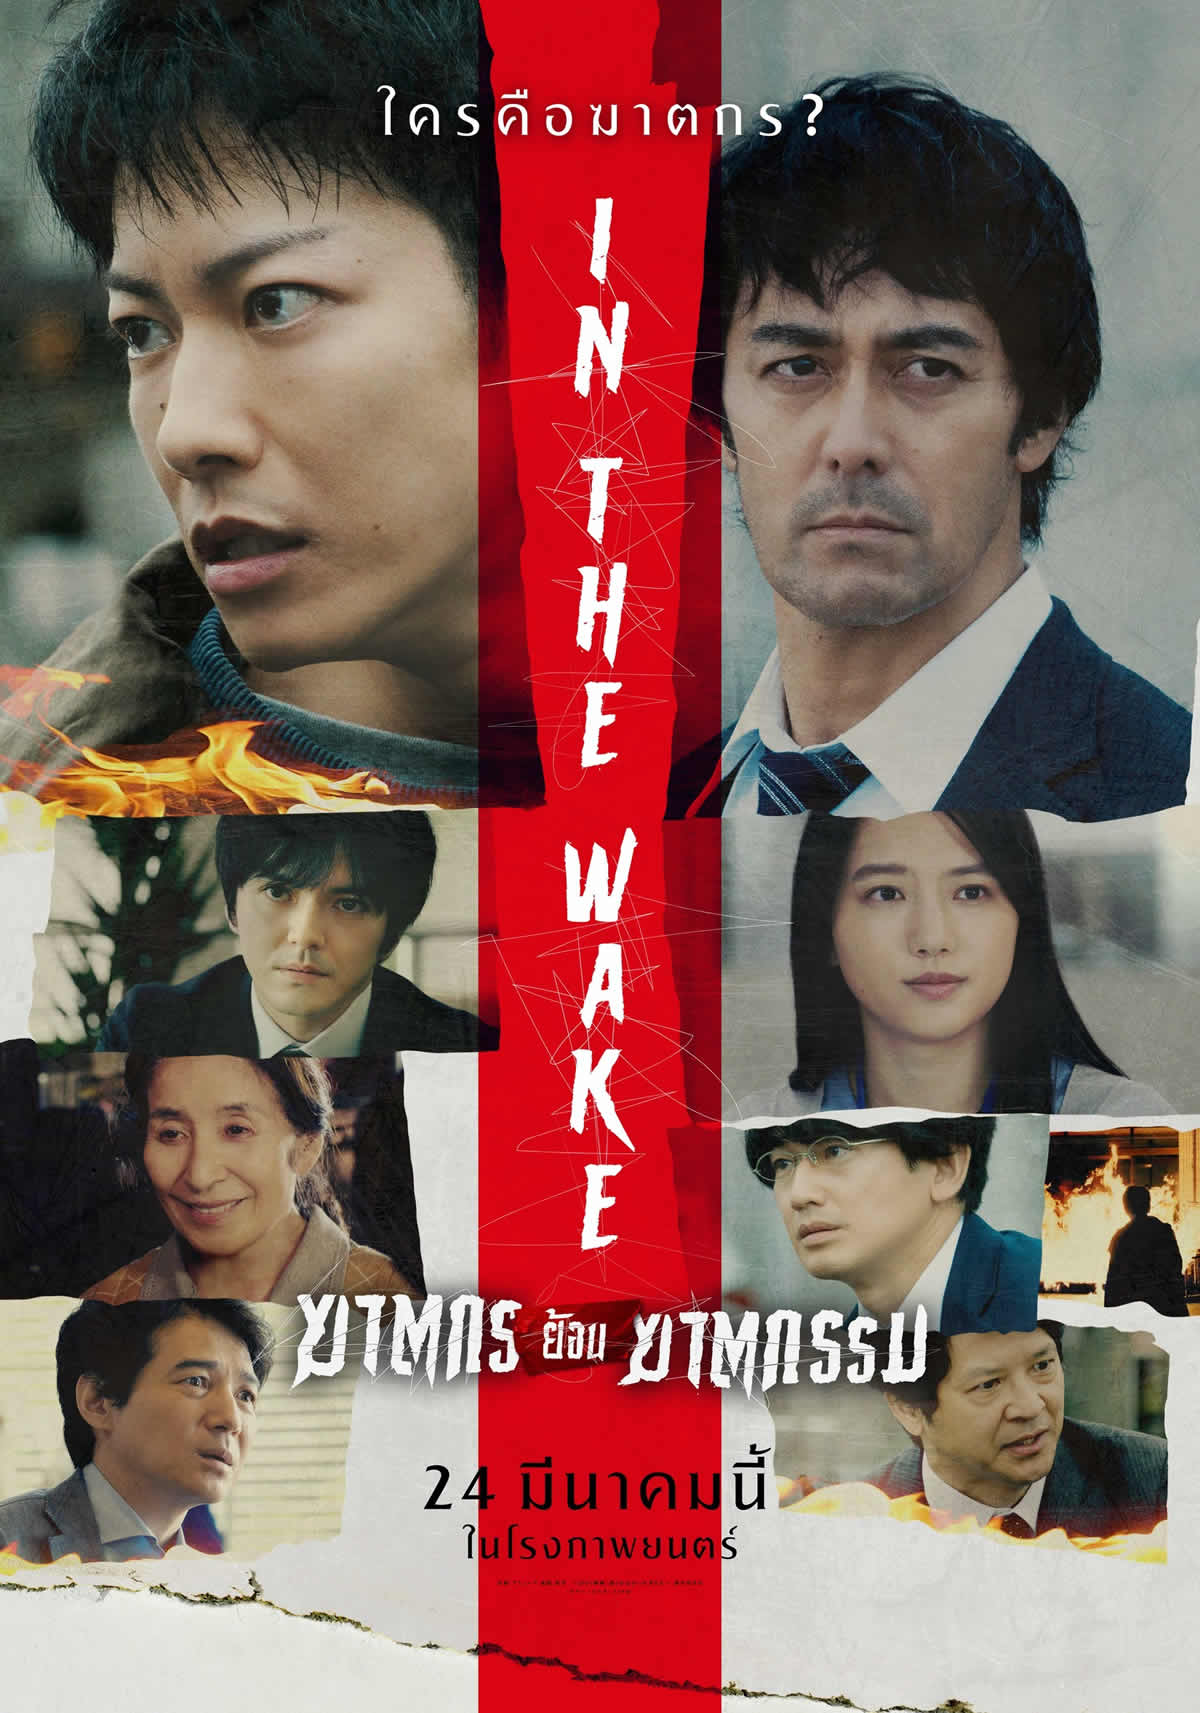 佐藤健主演映画「護られなかった者たちへ」タイで2022年3月24日より劇場公開